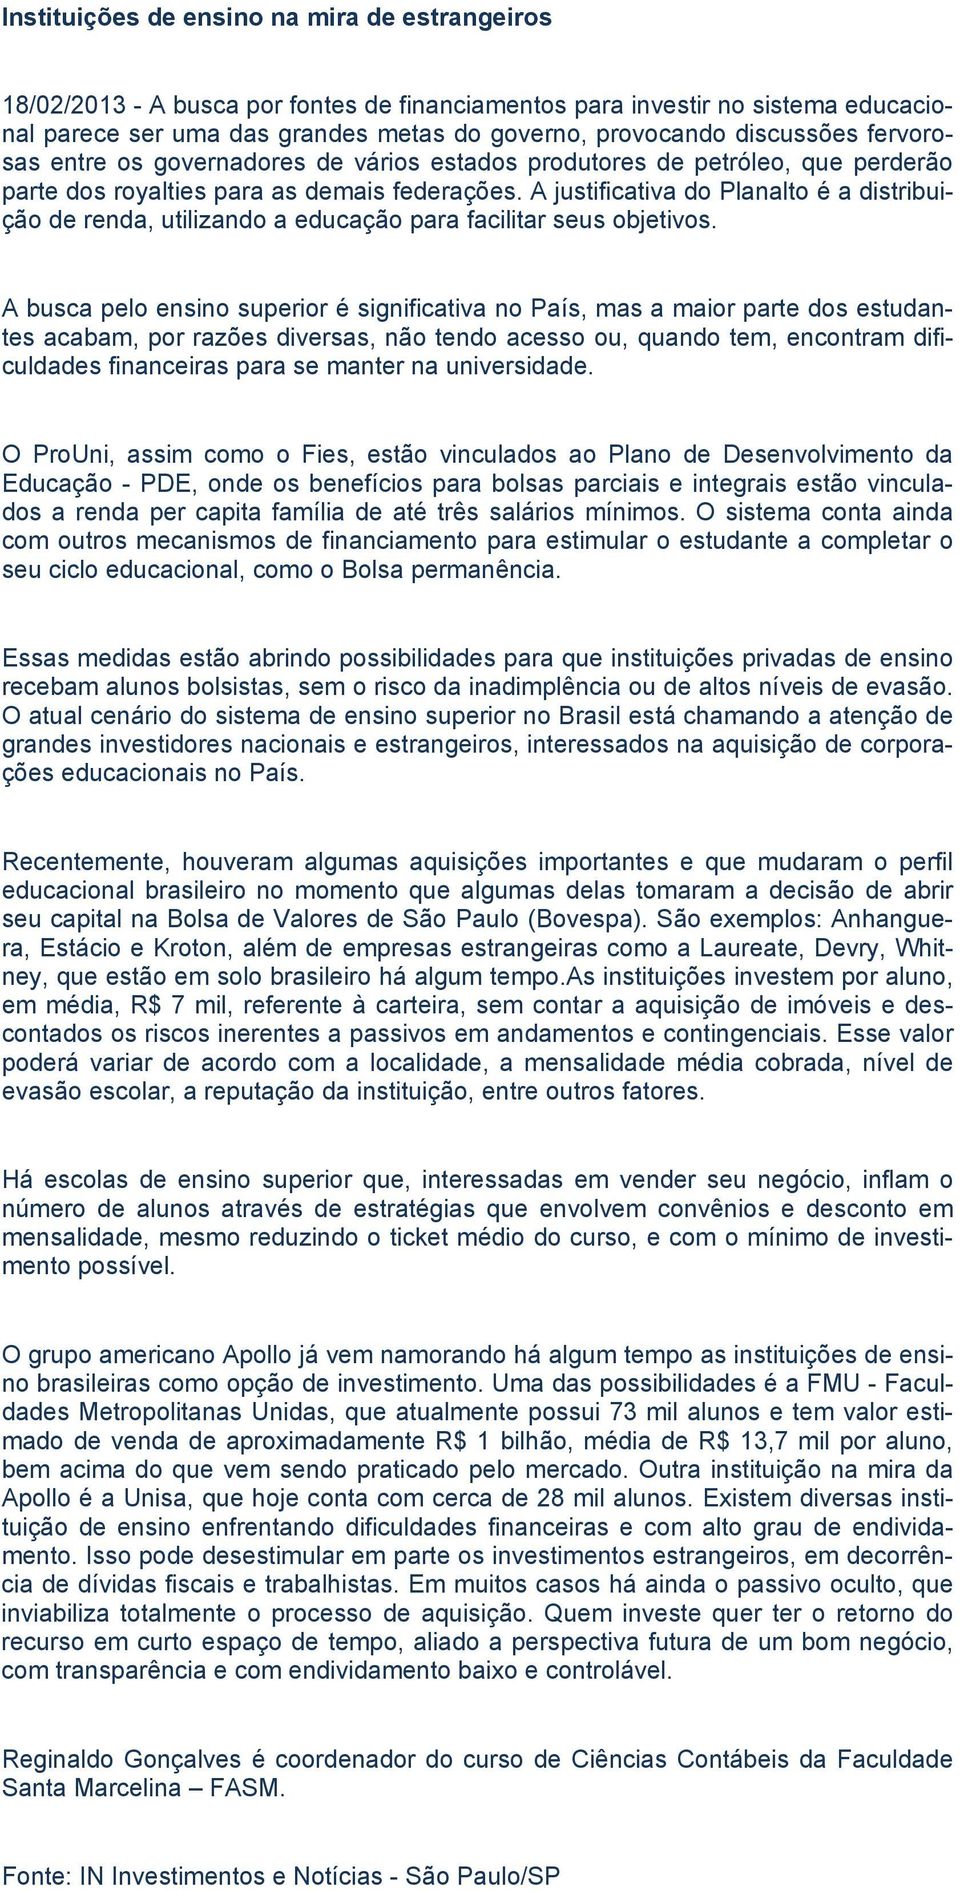 A justificativa do Planalto é a distribuição de renda, utilizando a educação para facilitar seus objetivos.